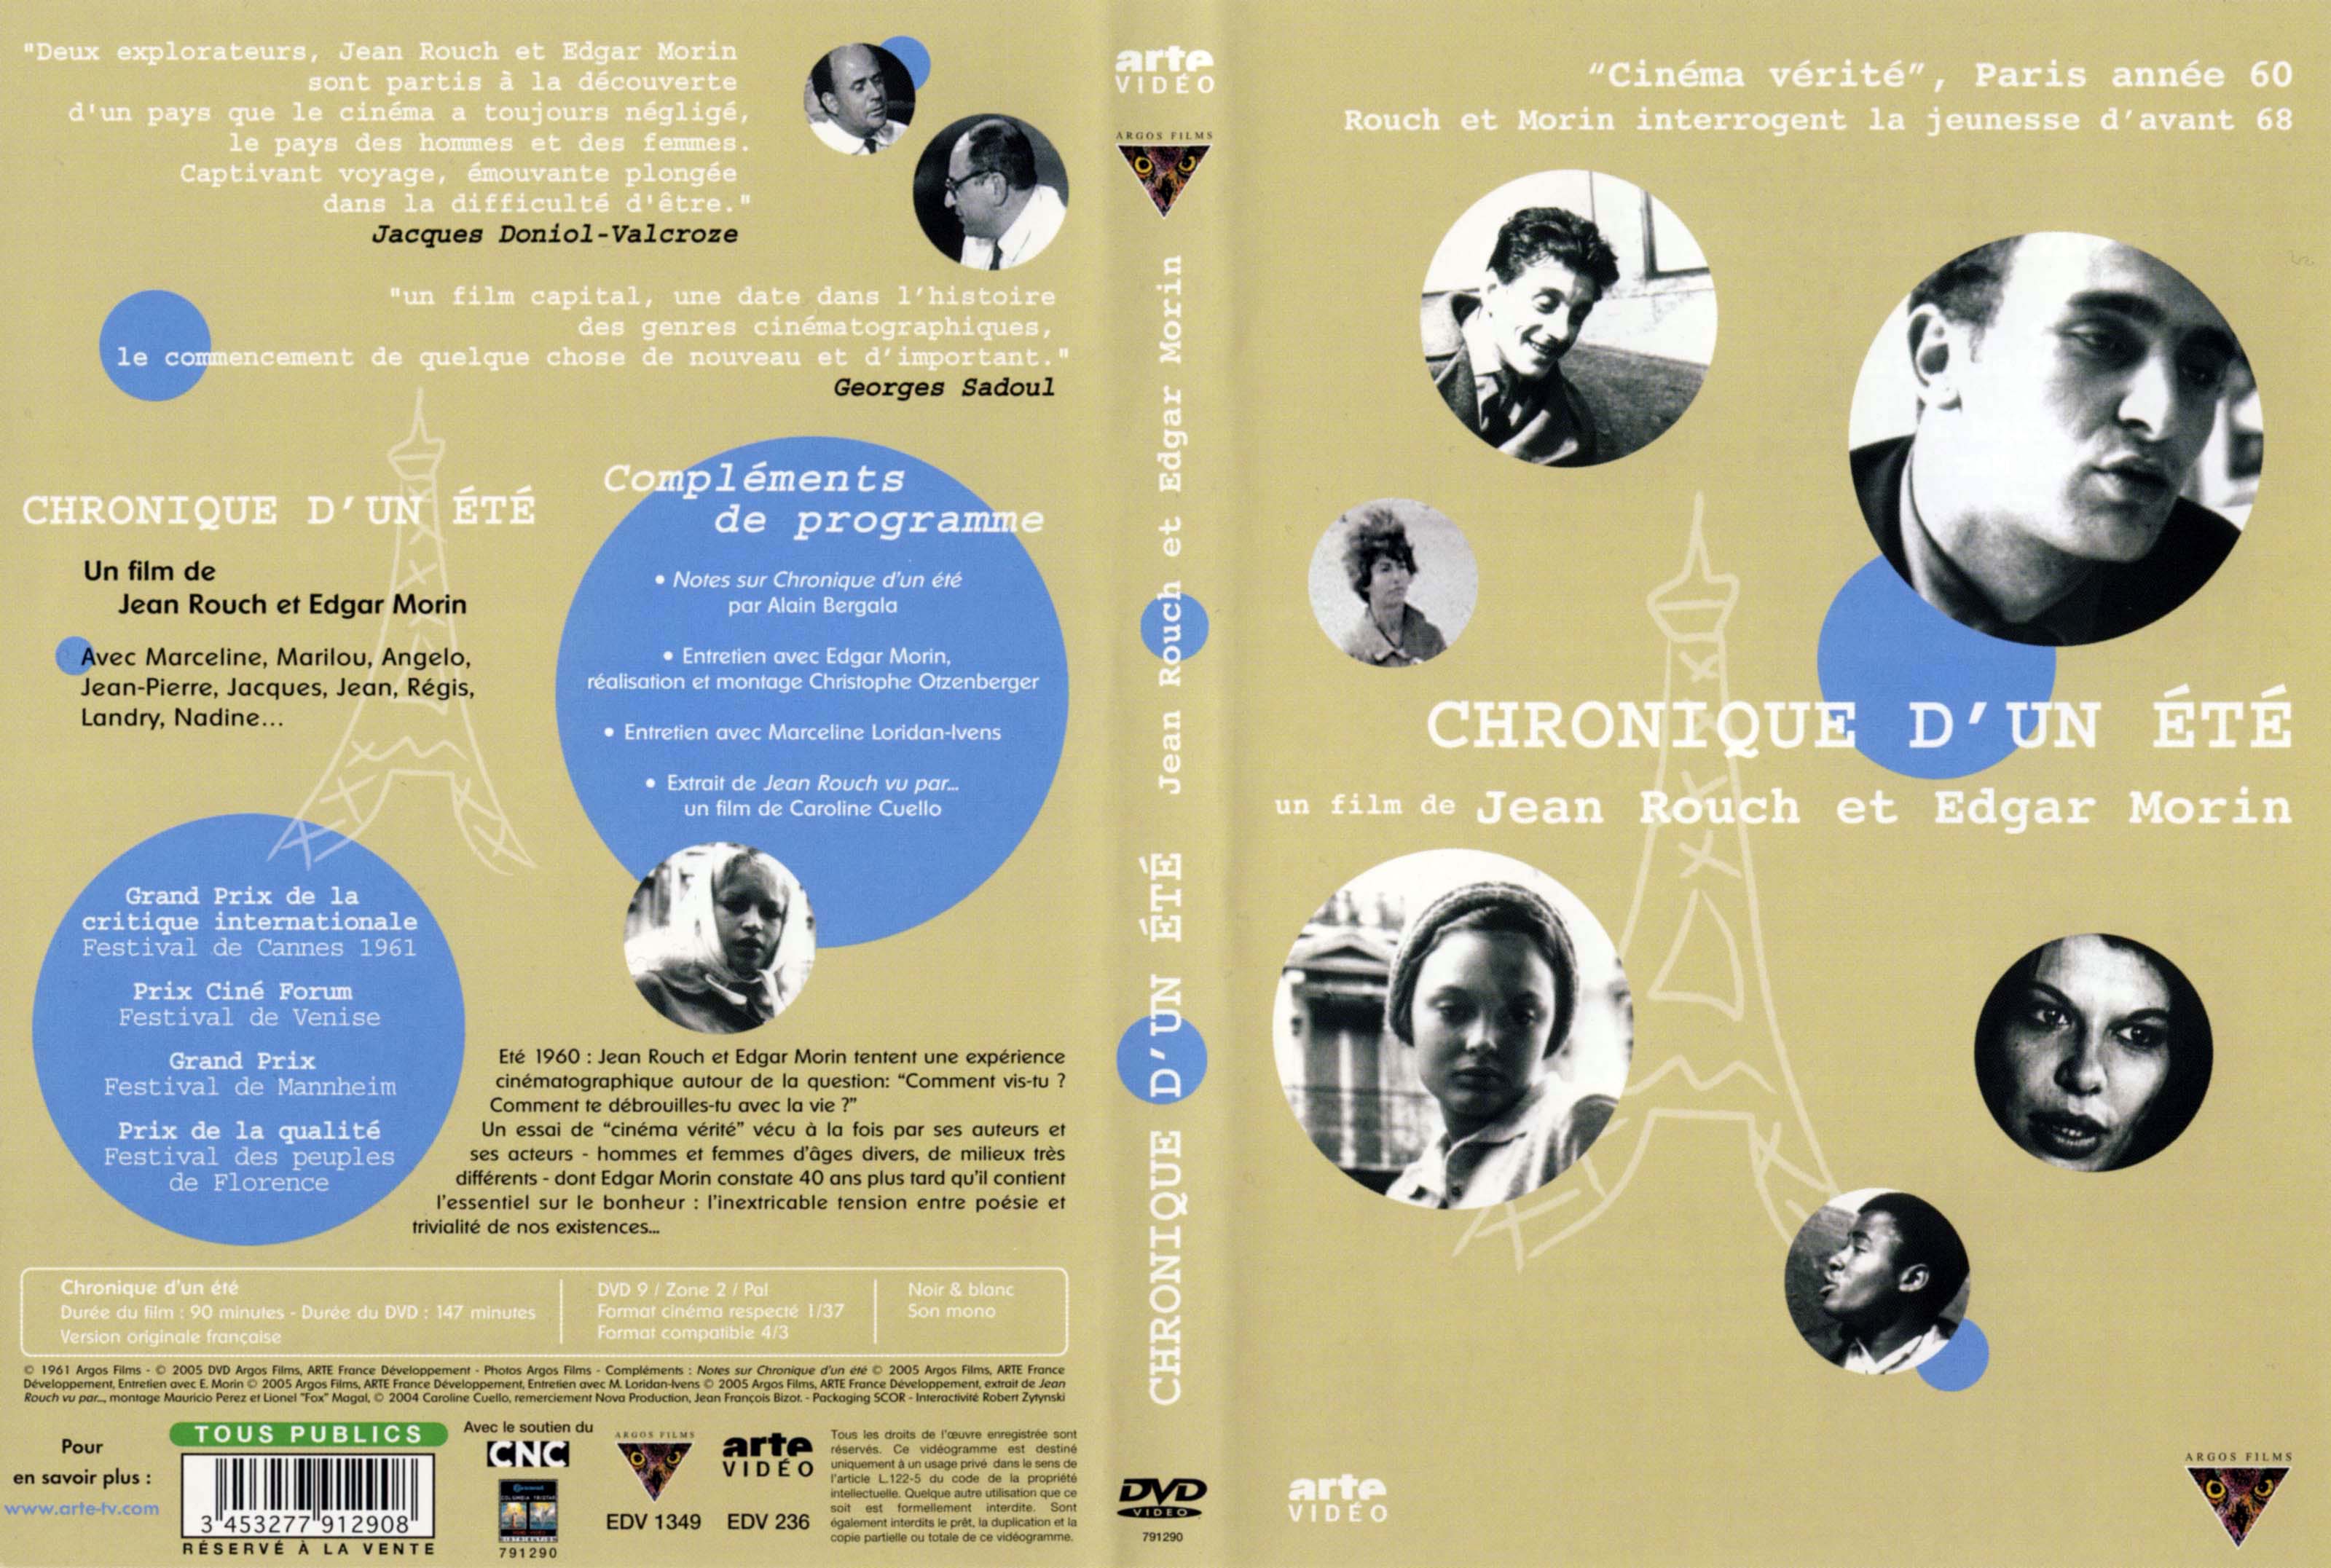 Jaquette DVD Chronique d